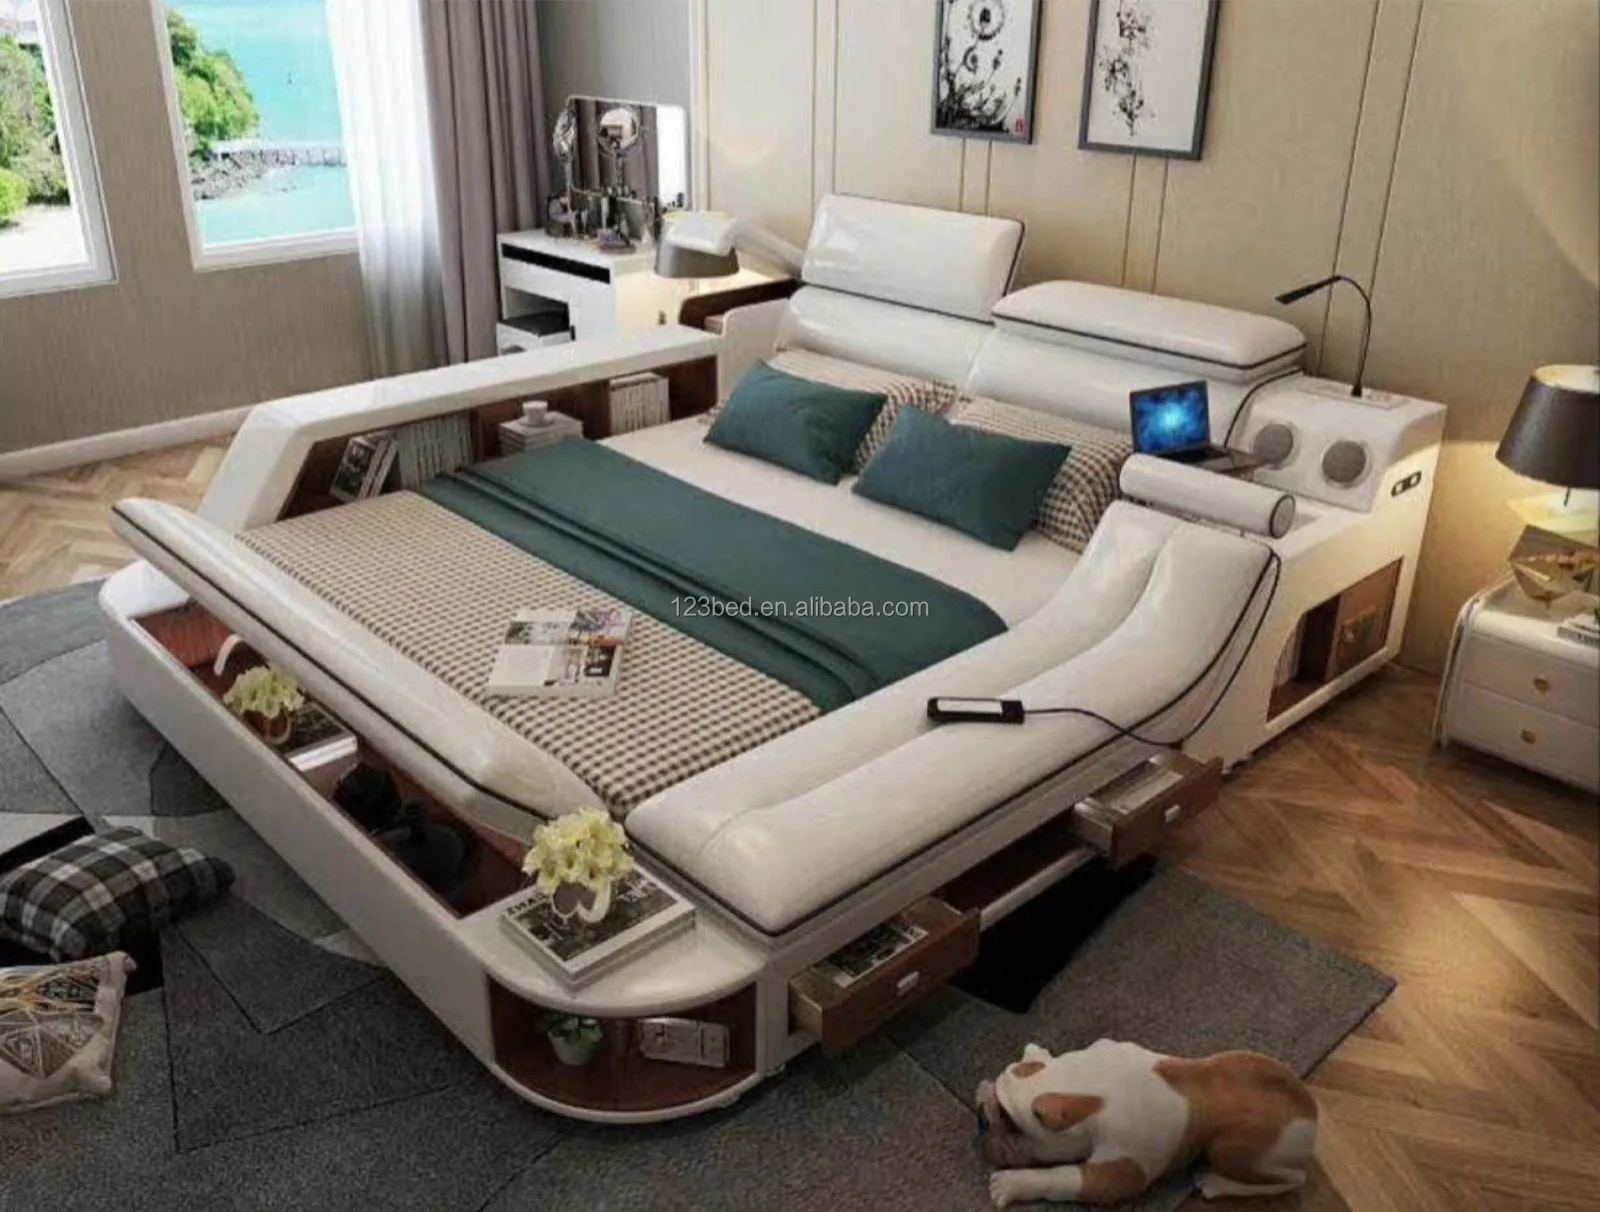 кровать двуспальная с массажным механизмом